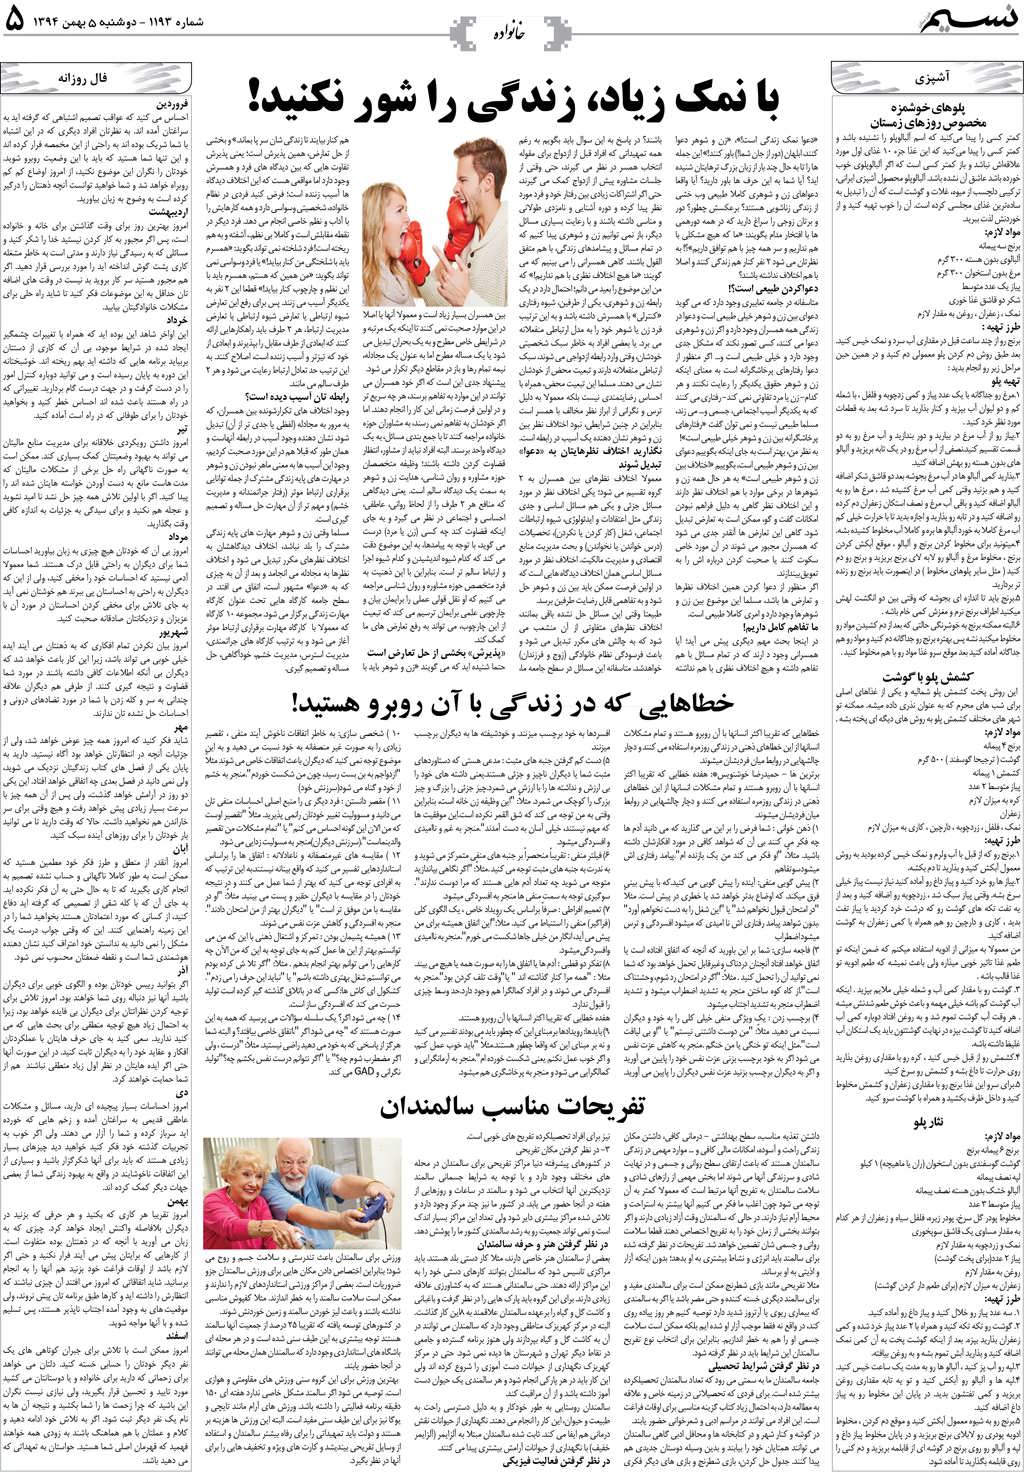 صفحه خانواده روزنامه نسیم شماره 1193